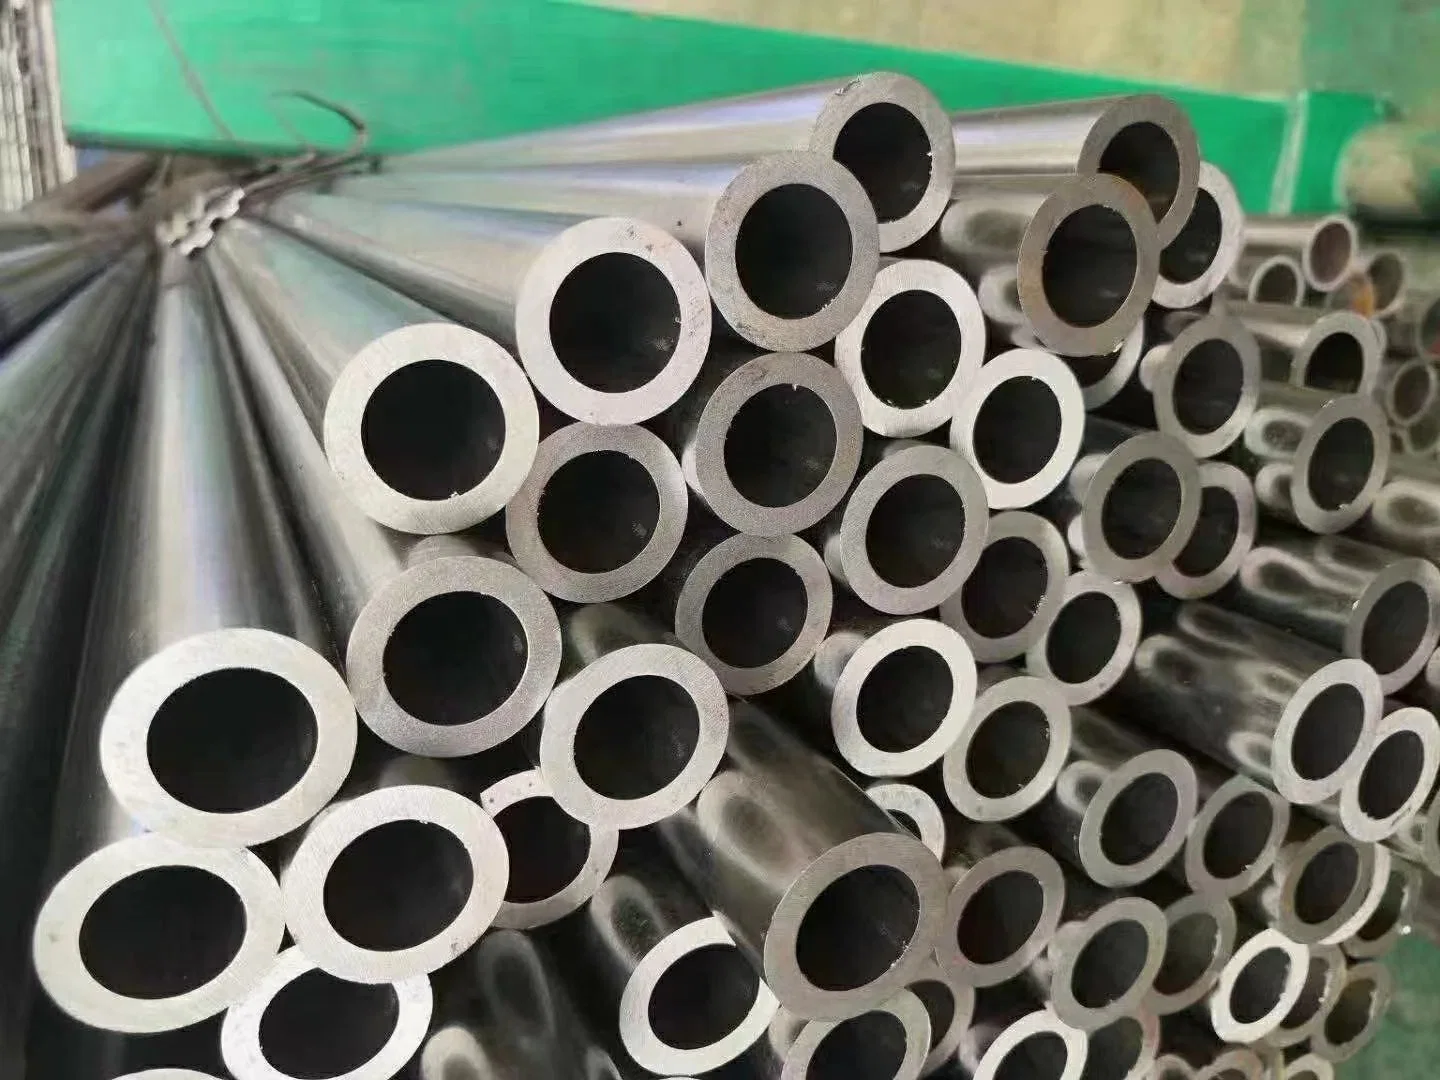 Fabricant de tuyaux en acier sans soudure de précision laminés à froid et étirés à froid selon les normes ASTM DIN. Tube en acier sans soudure laminé à froid à prix d'usine.